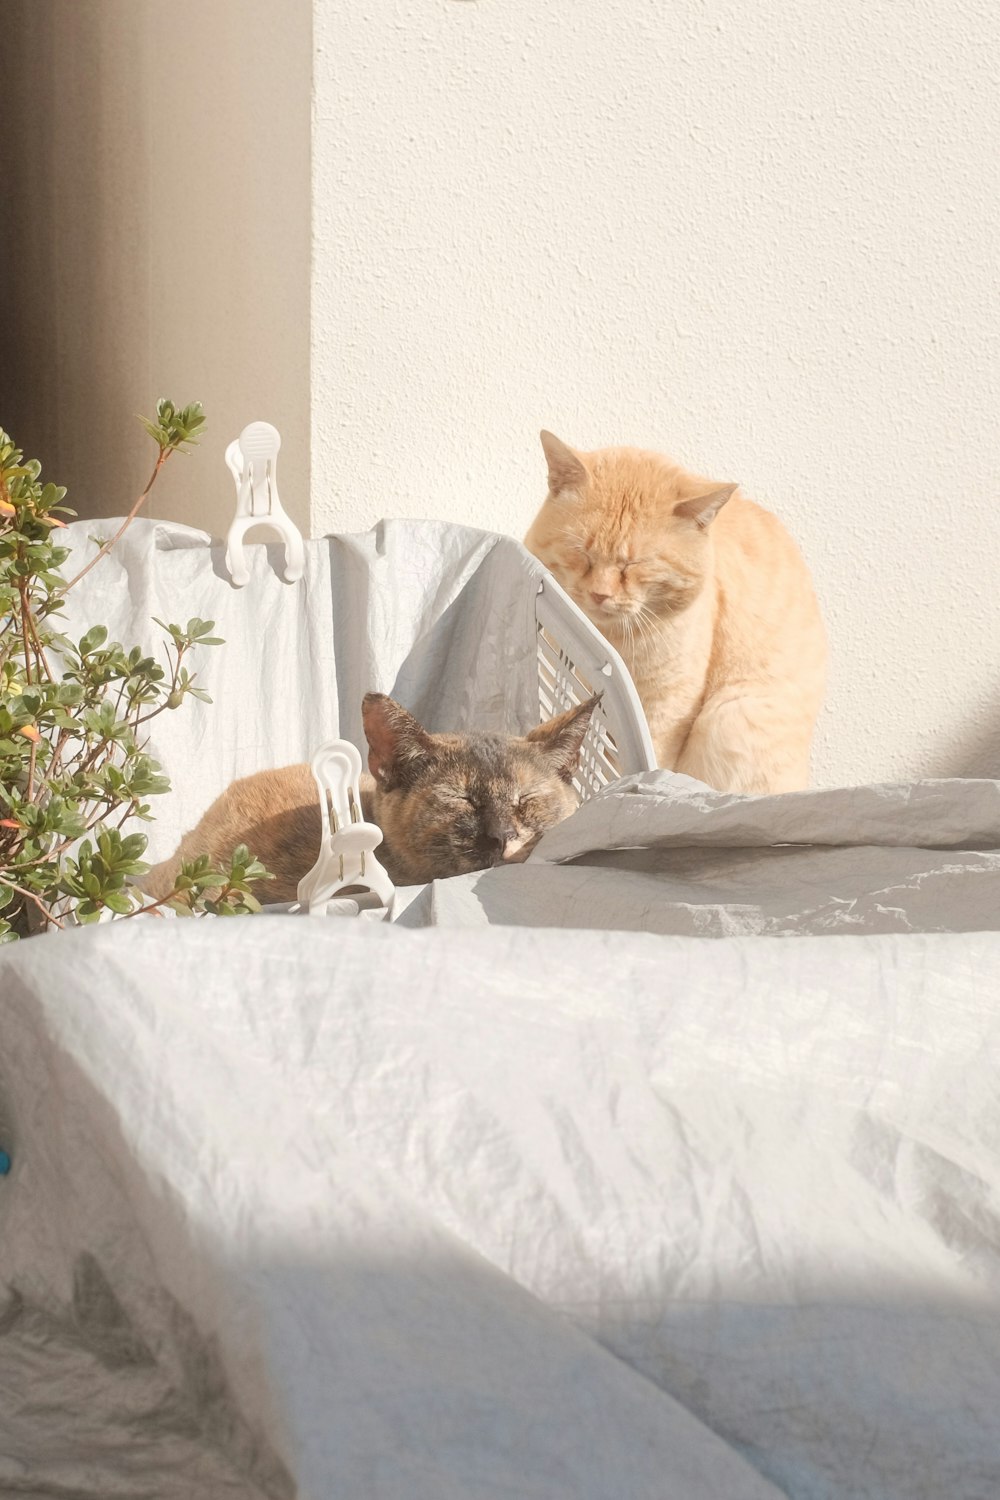 orange tabby cat beside brown tabby cat on white bed